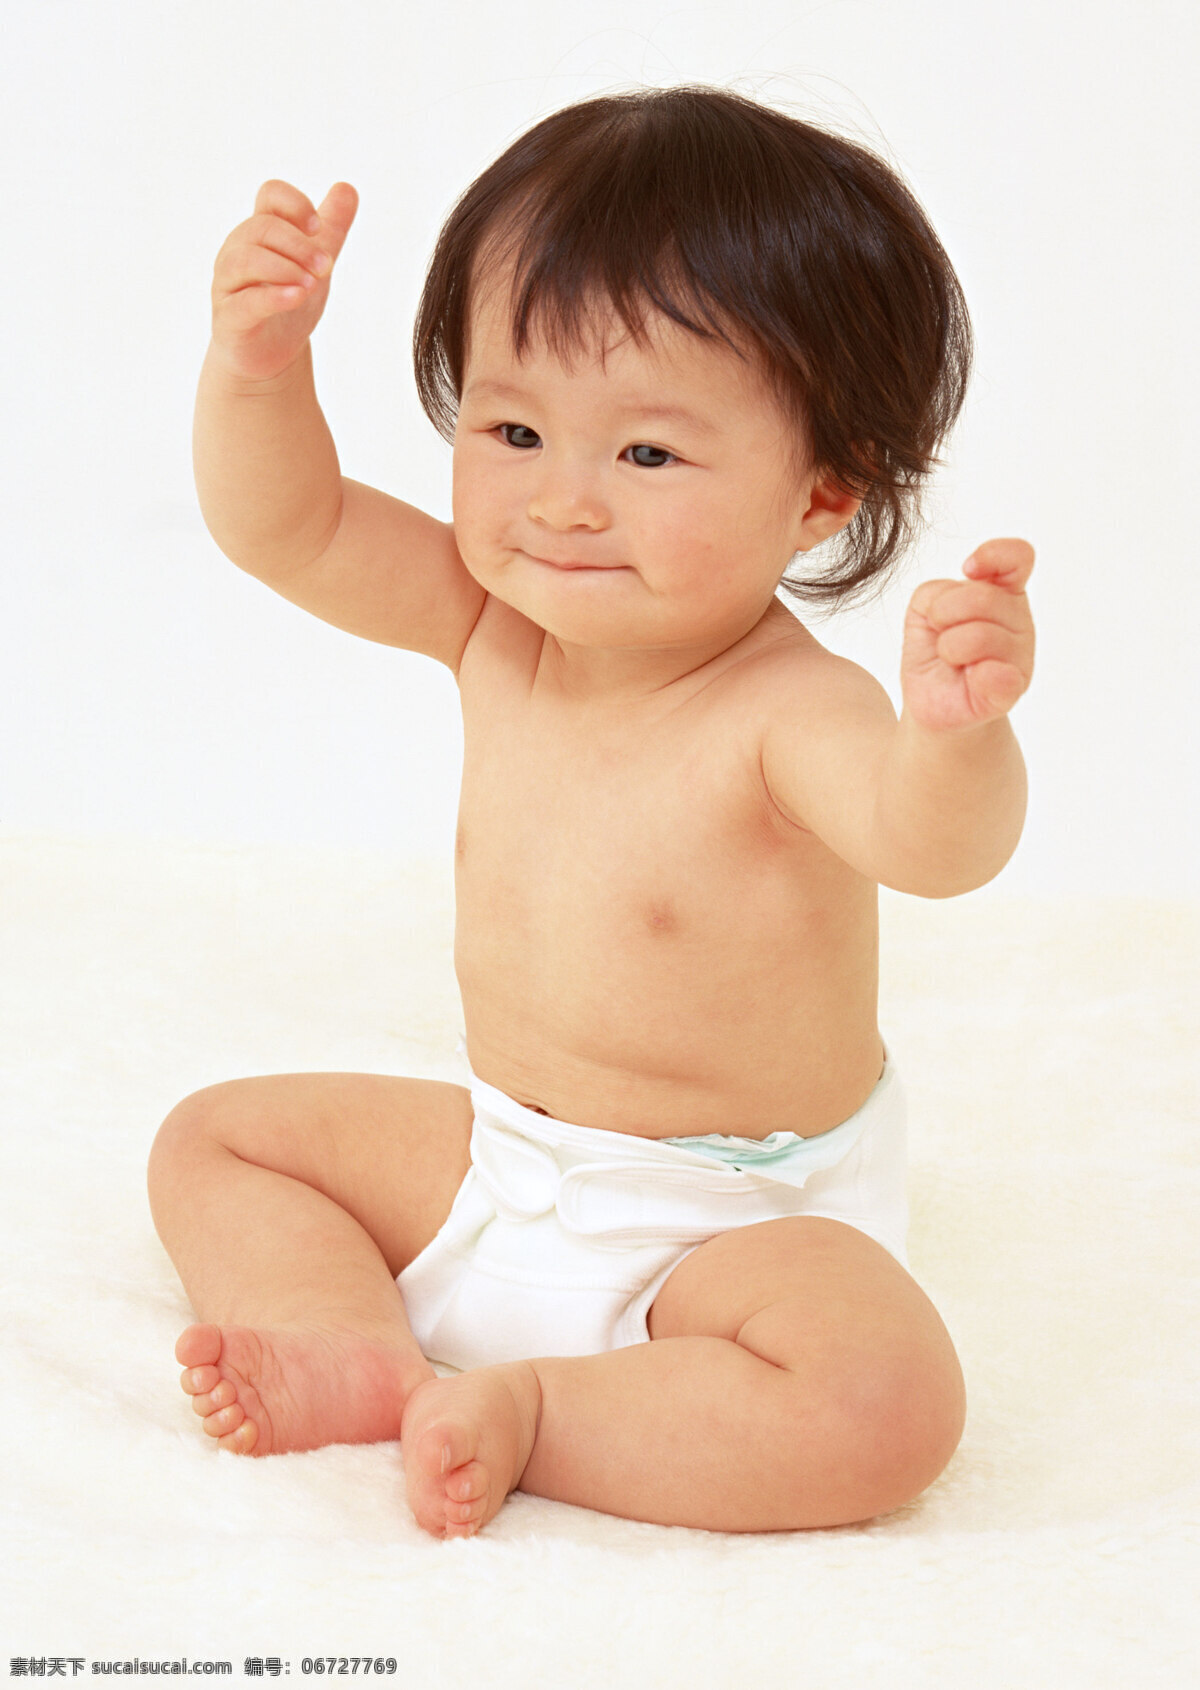 婴儿 儿童 可爱 坐着的婴儿 白色裤子 笑脸 举手 开心 婴儿写真 儿童拍照 儿童摄影 人物图库 儿童幼儿 摄影图库